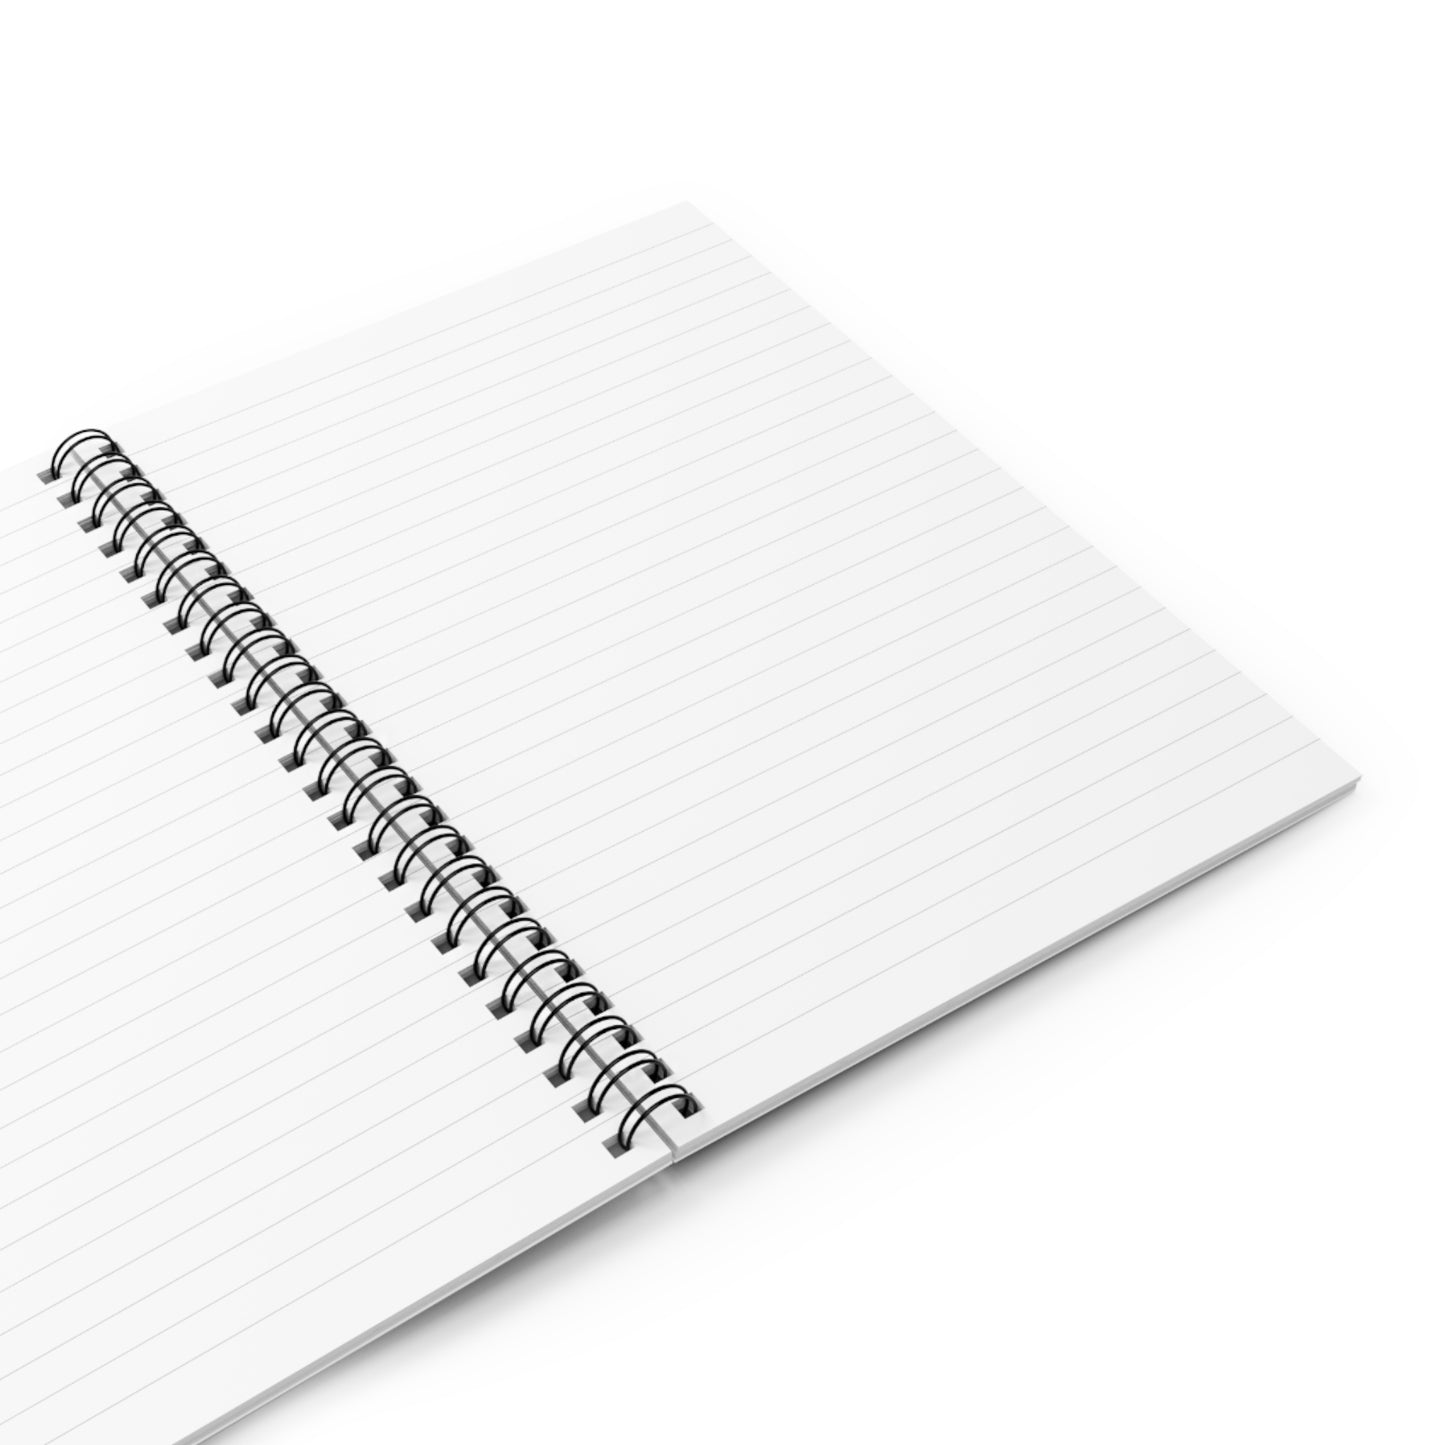 Perci Arai, Planchete Spiral Notebook - Ruled Line